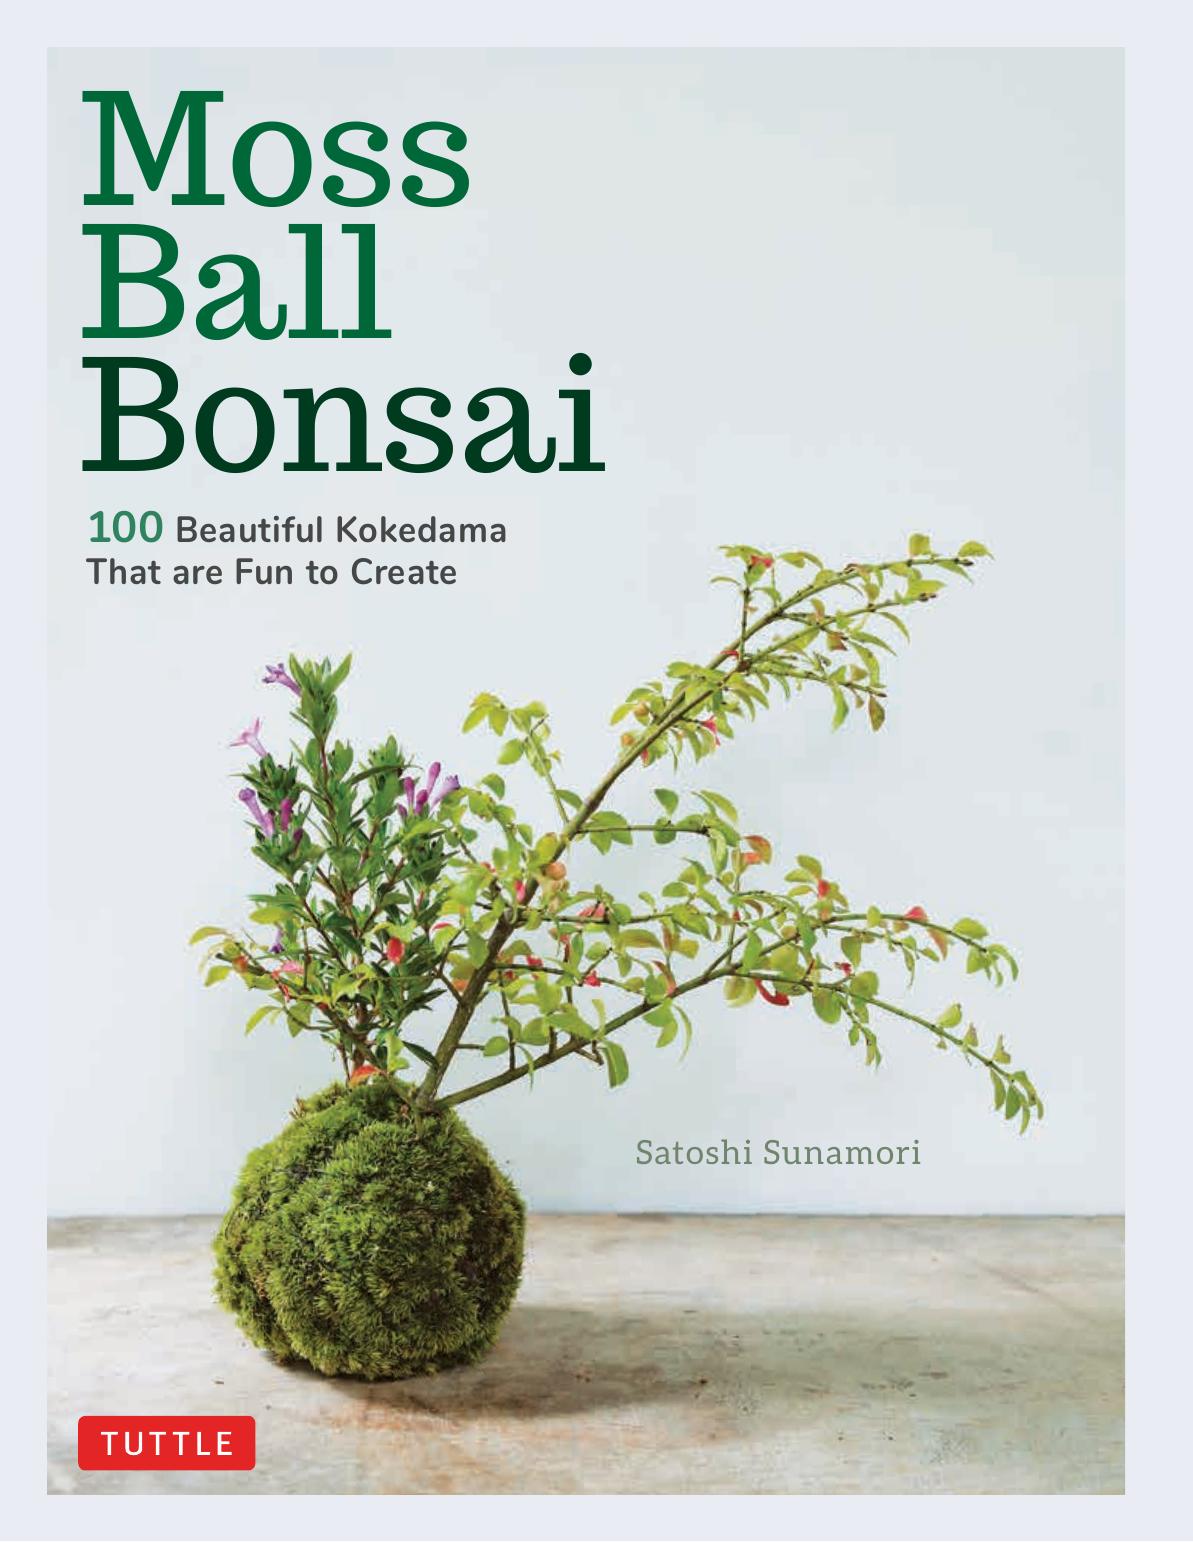 Moss Ball Bonsai by Satoshi Sunamori